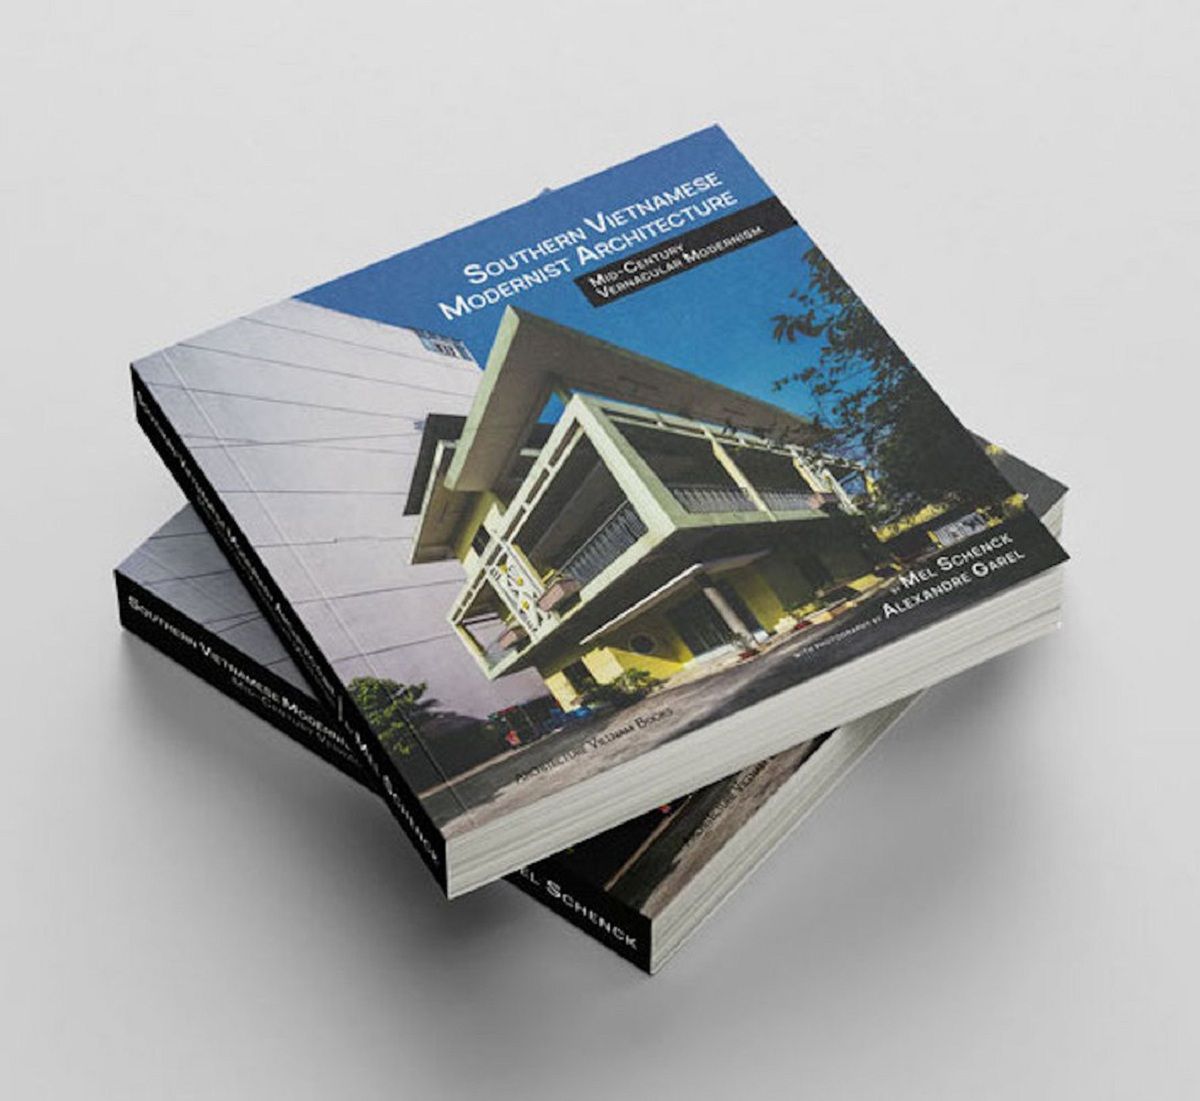 Có gì trong cuốn sách "Kiến trúc hiện đại Miền Nam Việt Nam - Dấu ấn bản địa giữa thế kỷ XX"?